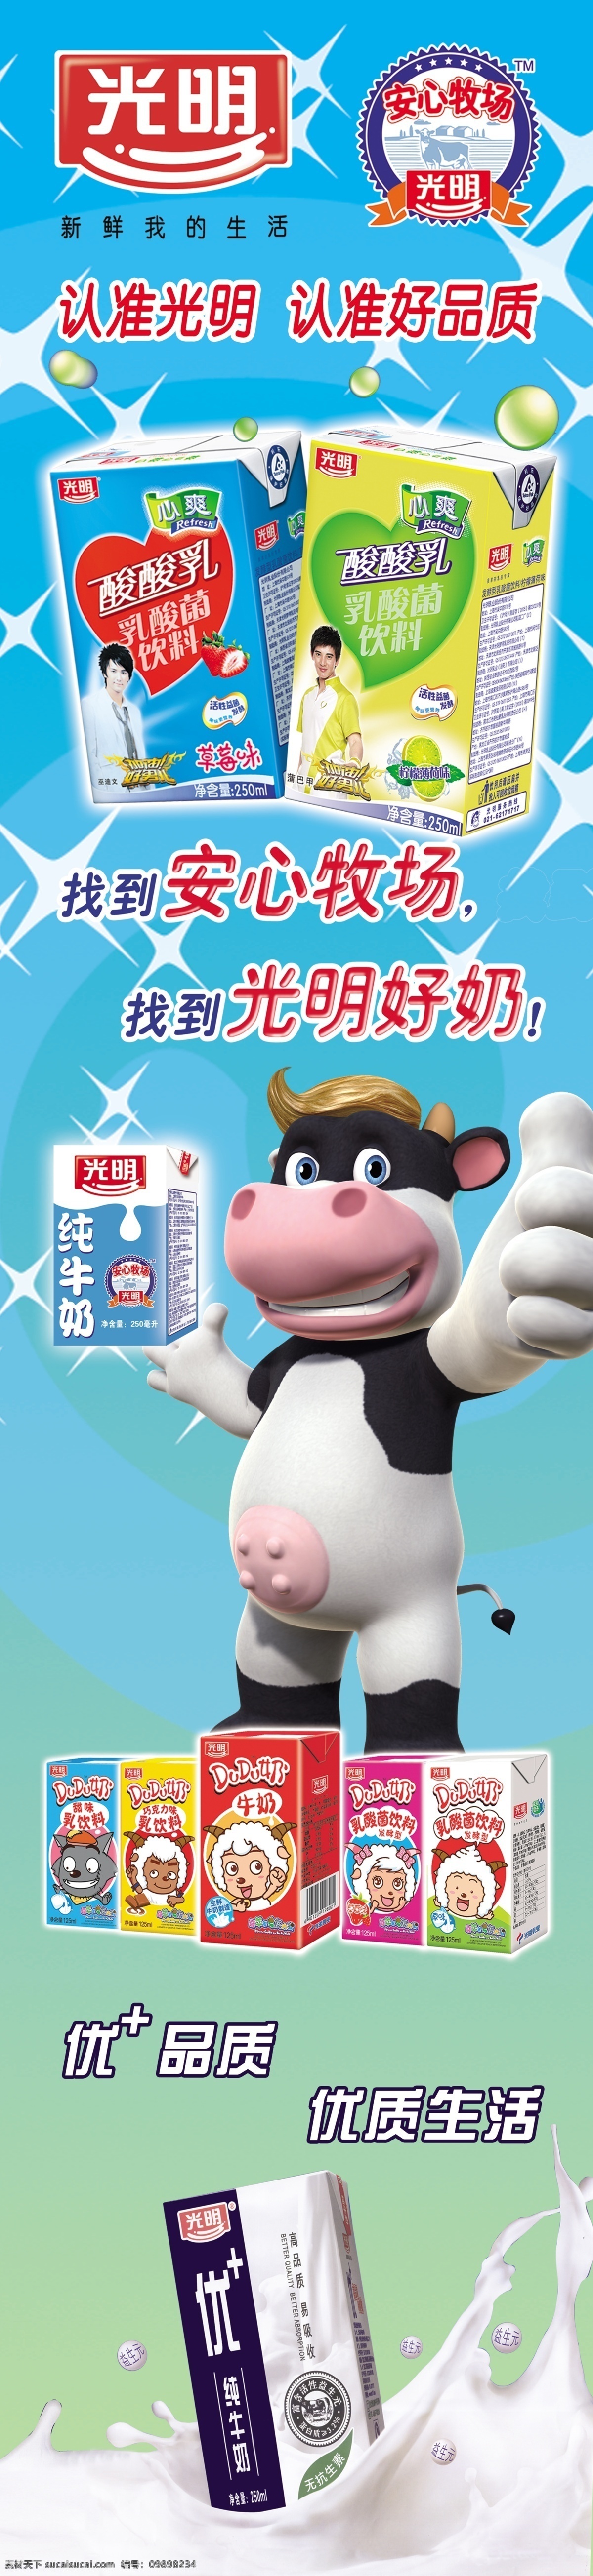 光明牛奶海报 奶牛 饮料 广告设计模板 源文件